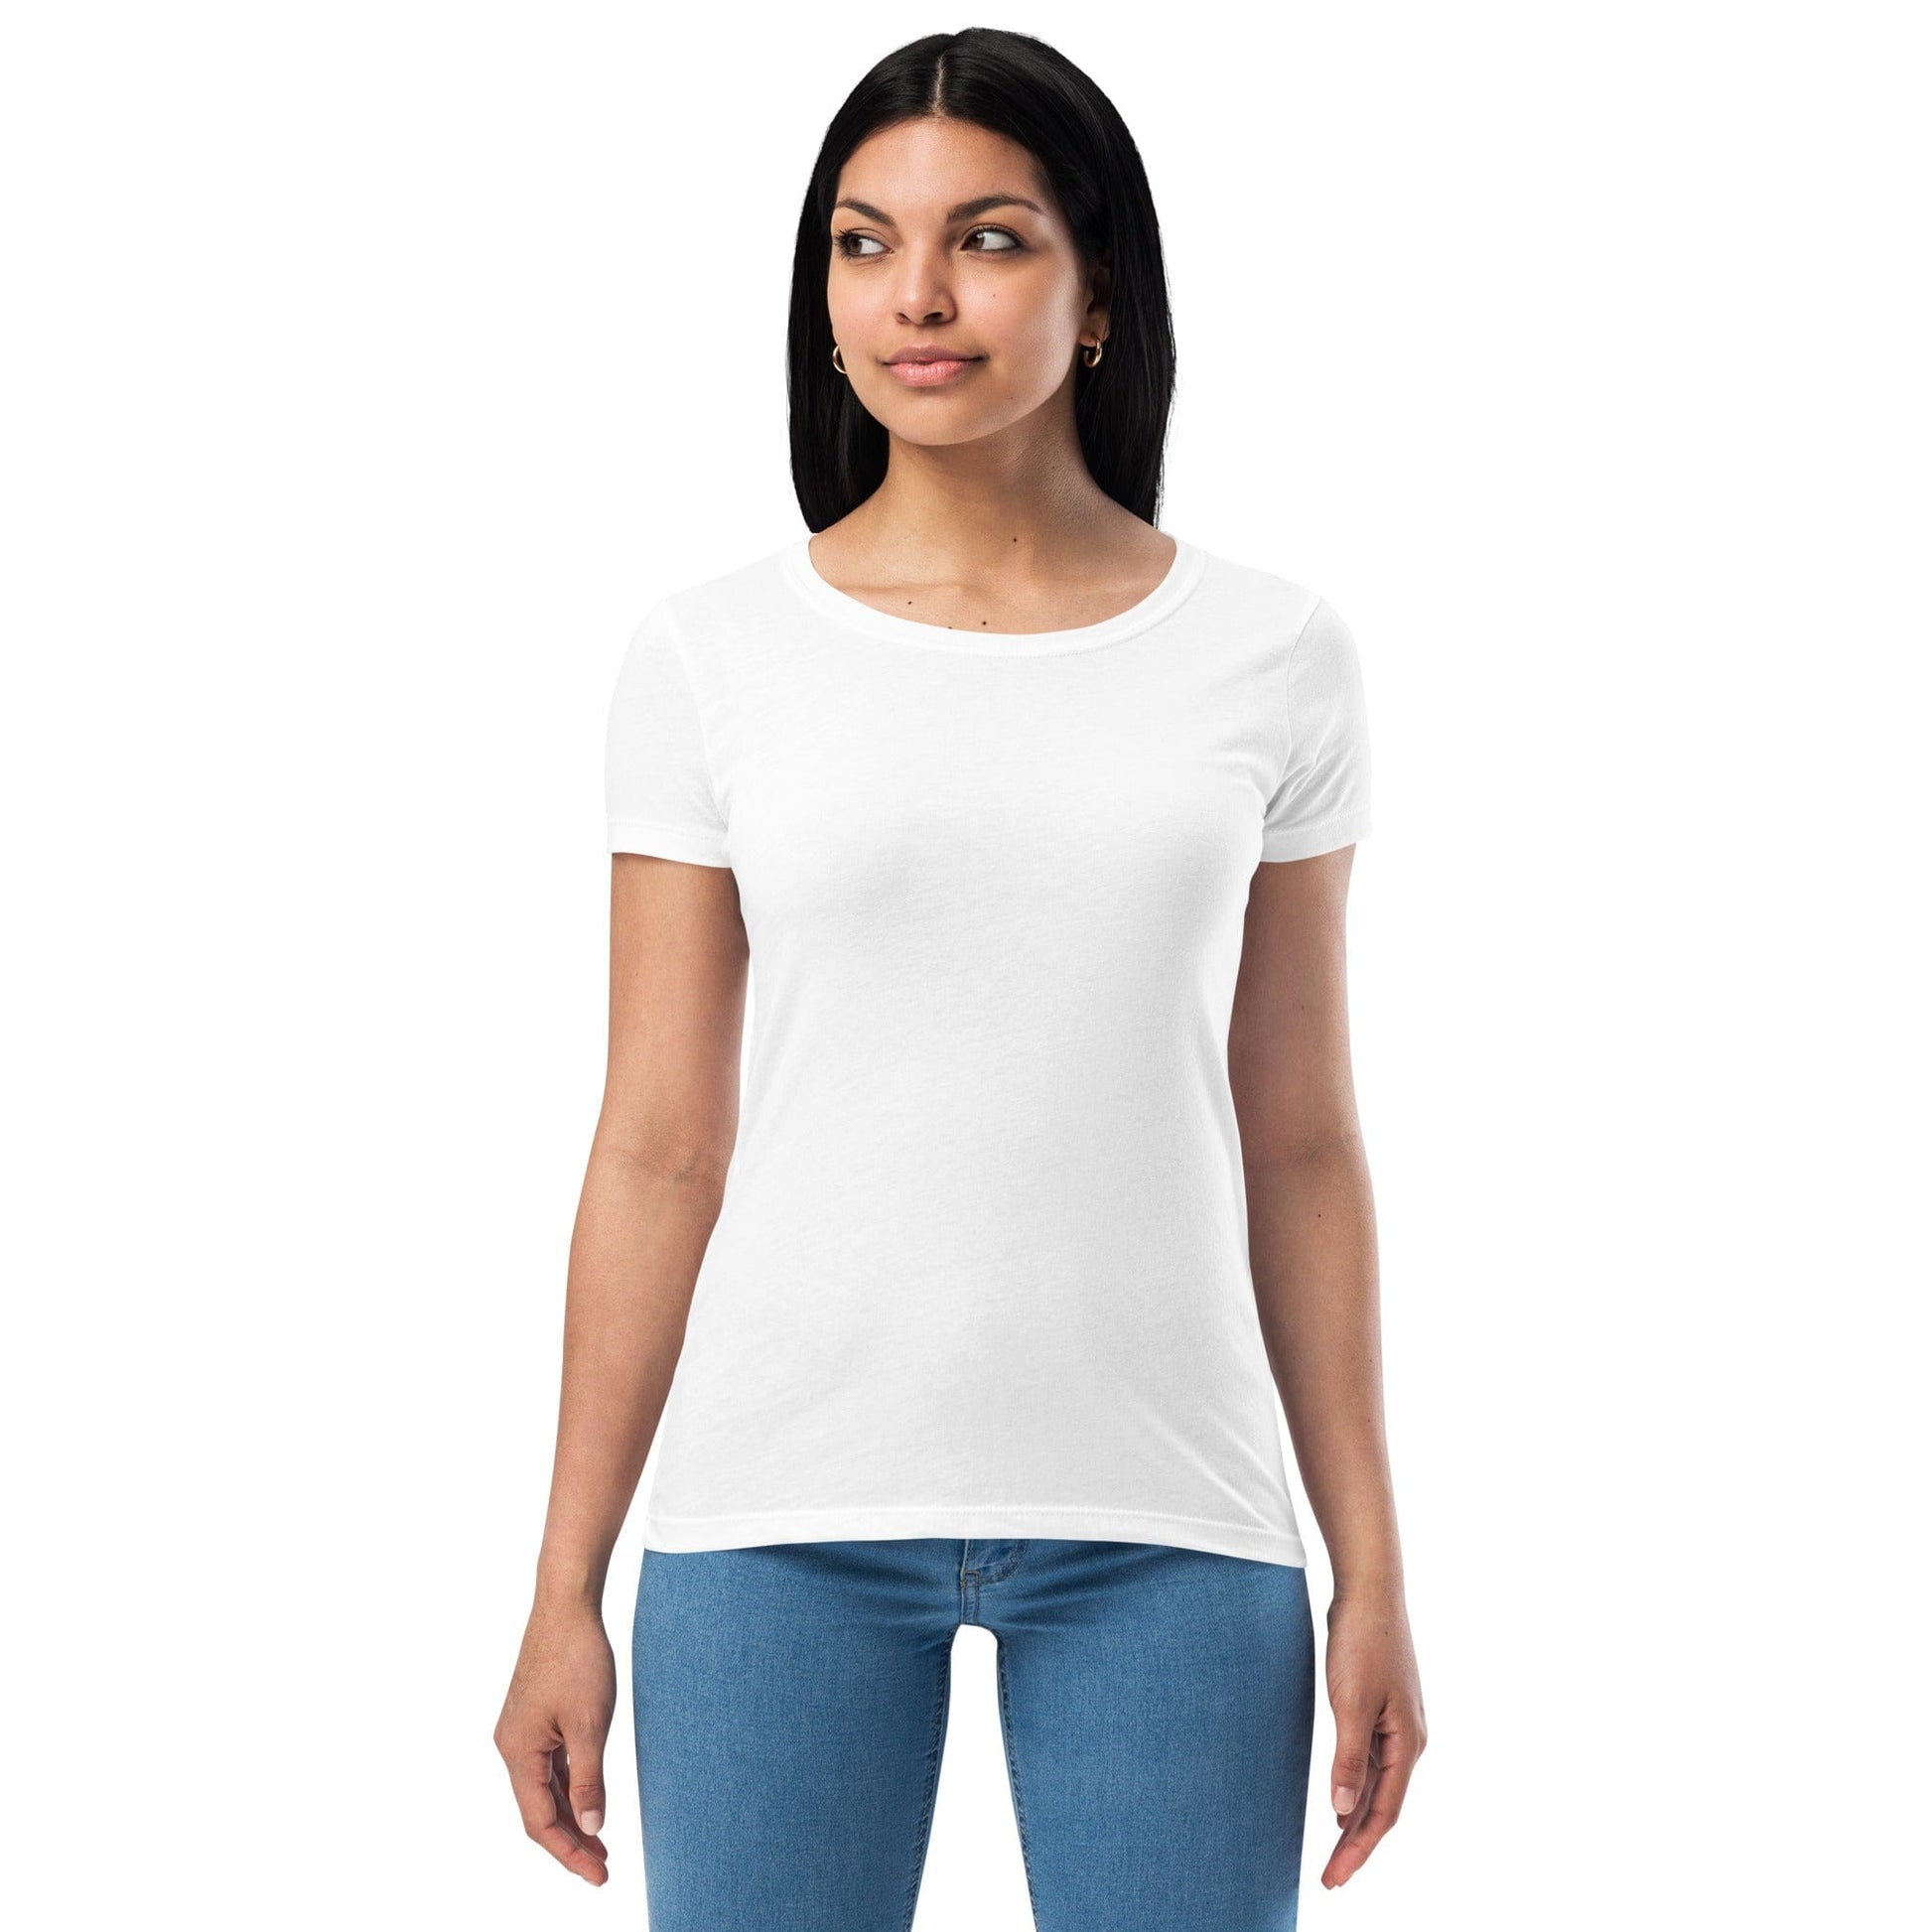 Tru Soldier Sportswear  White / XS Women’s fitted t-shirt